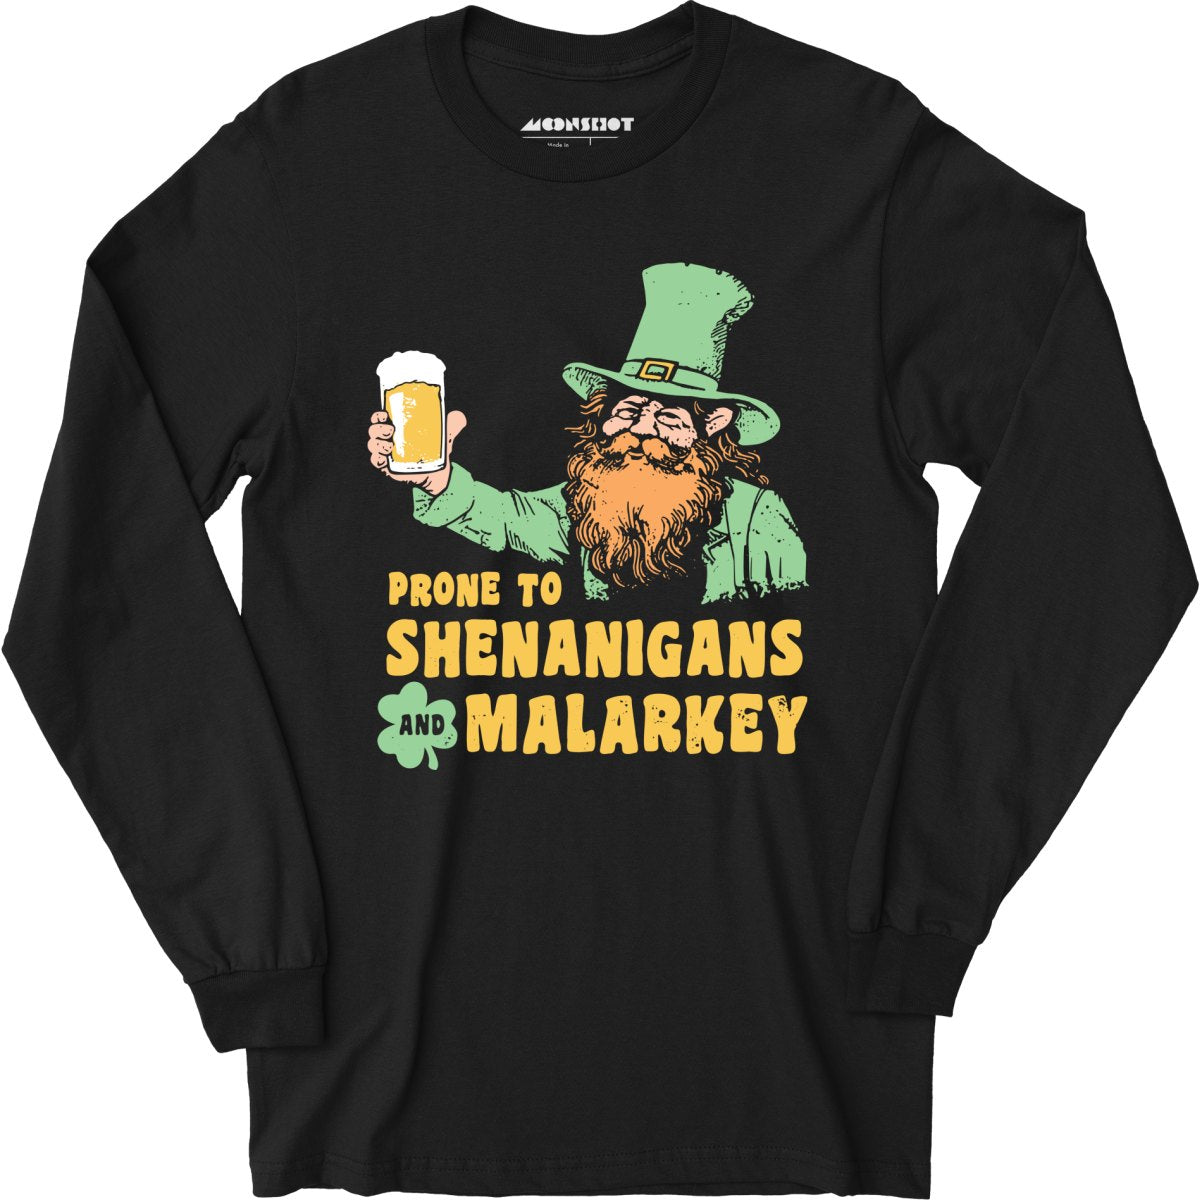 Prone to Shenanigans and Malarkey - Long Sleeve T-Shirt